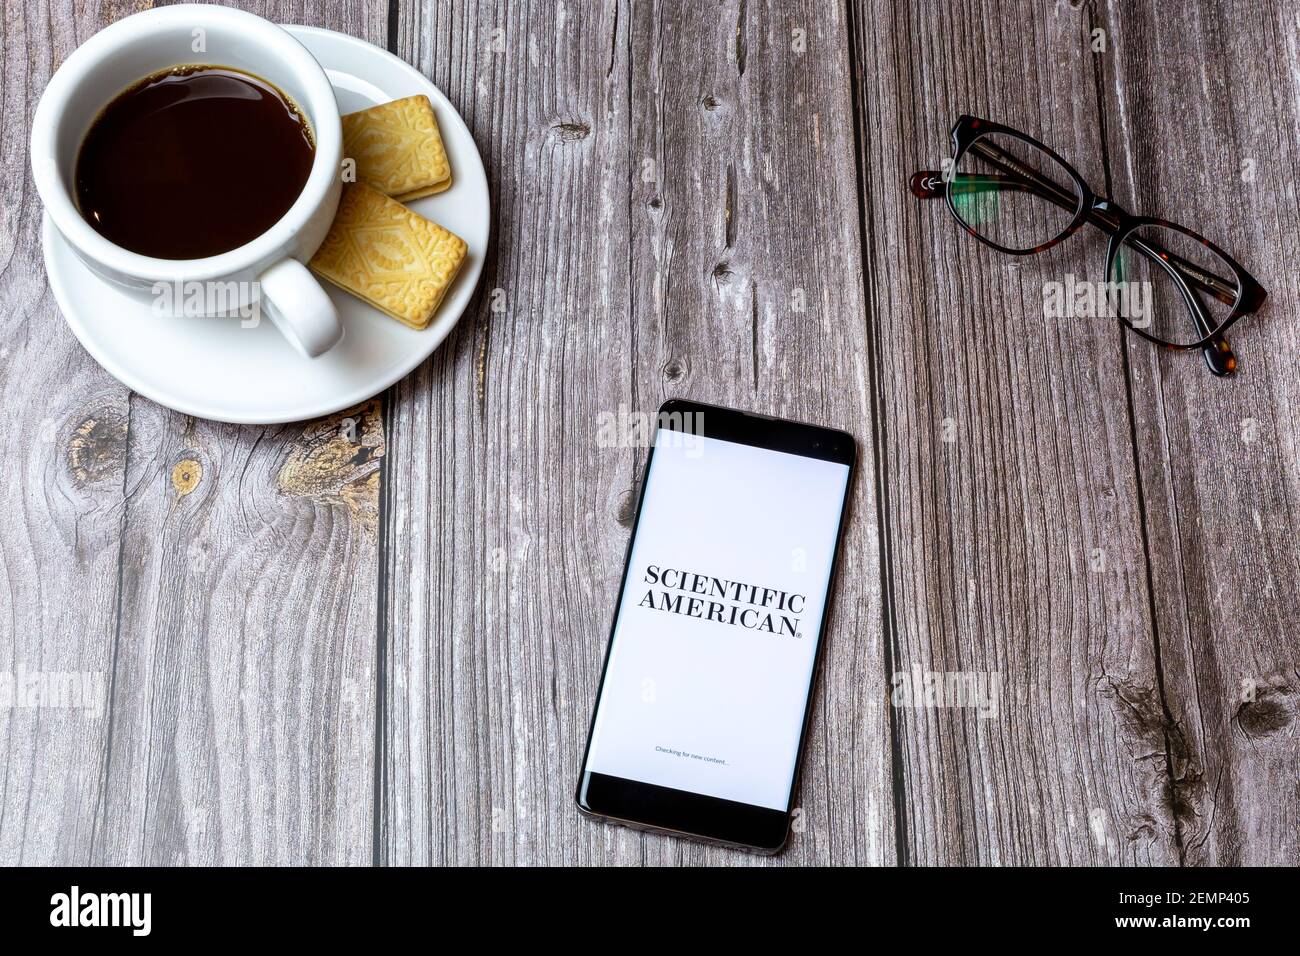 Ein Handy oder Handy auf einem Holztisch Mit der Scientific American App neben einem Kaffee öffnen Und Brille Stockfoto